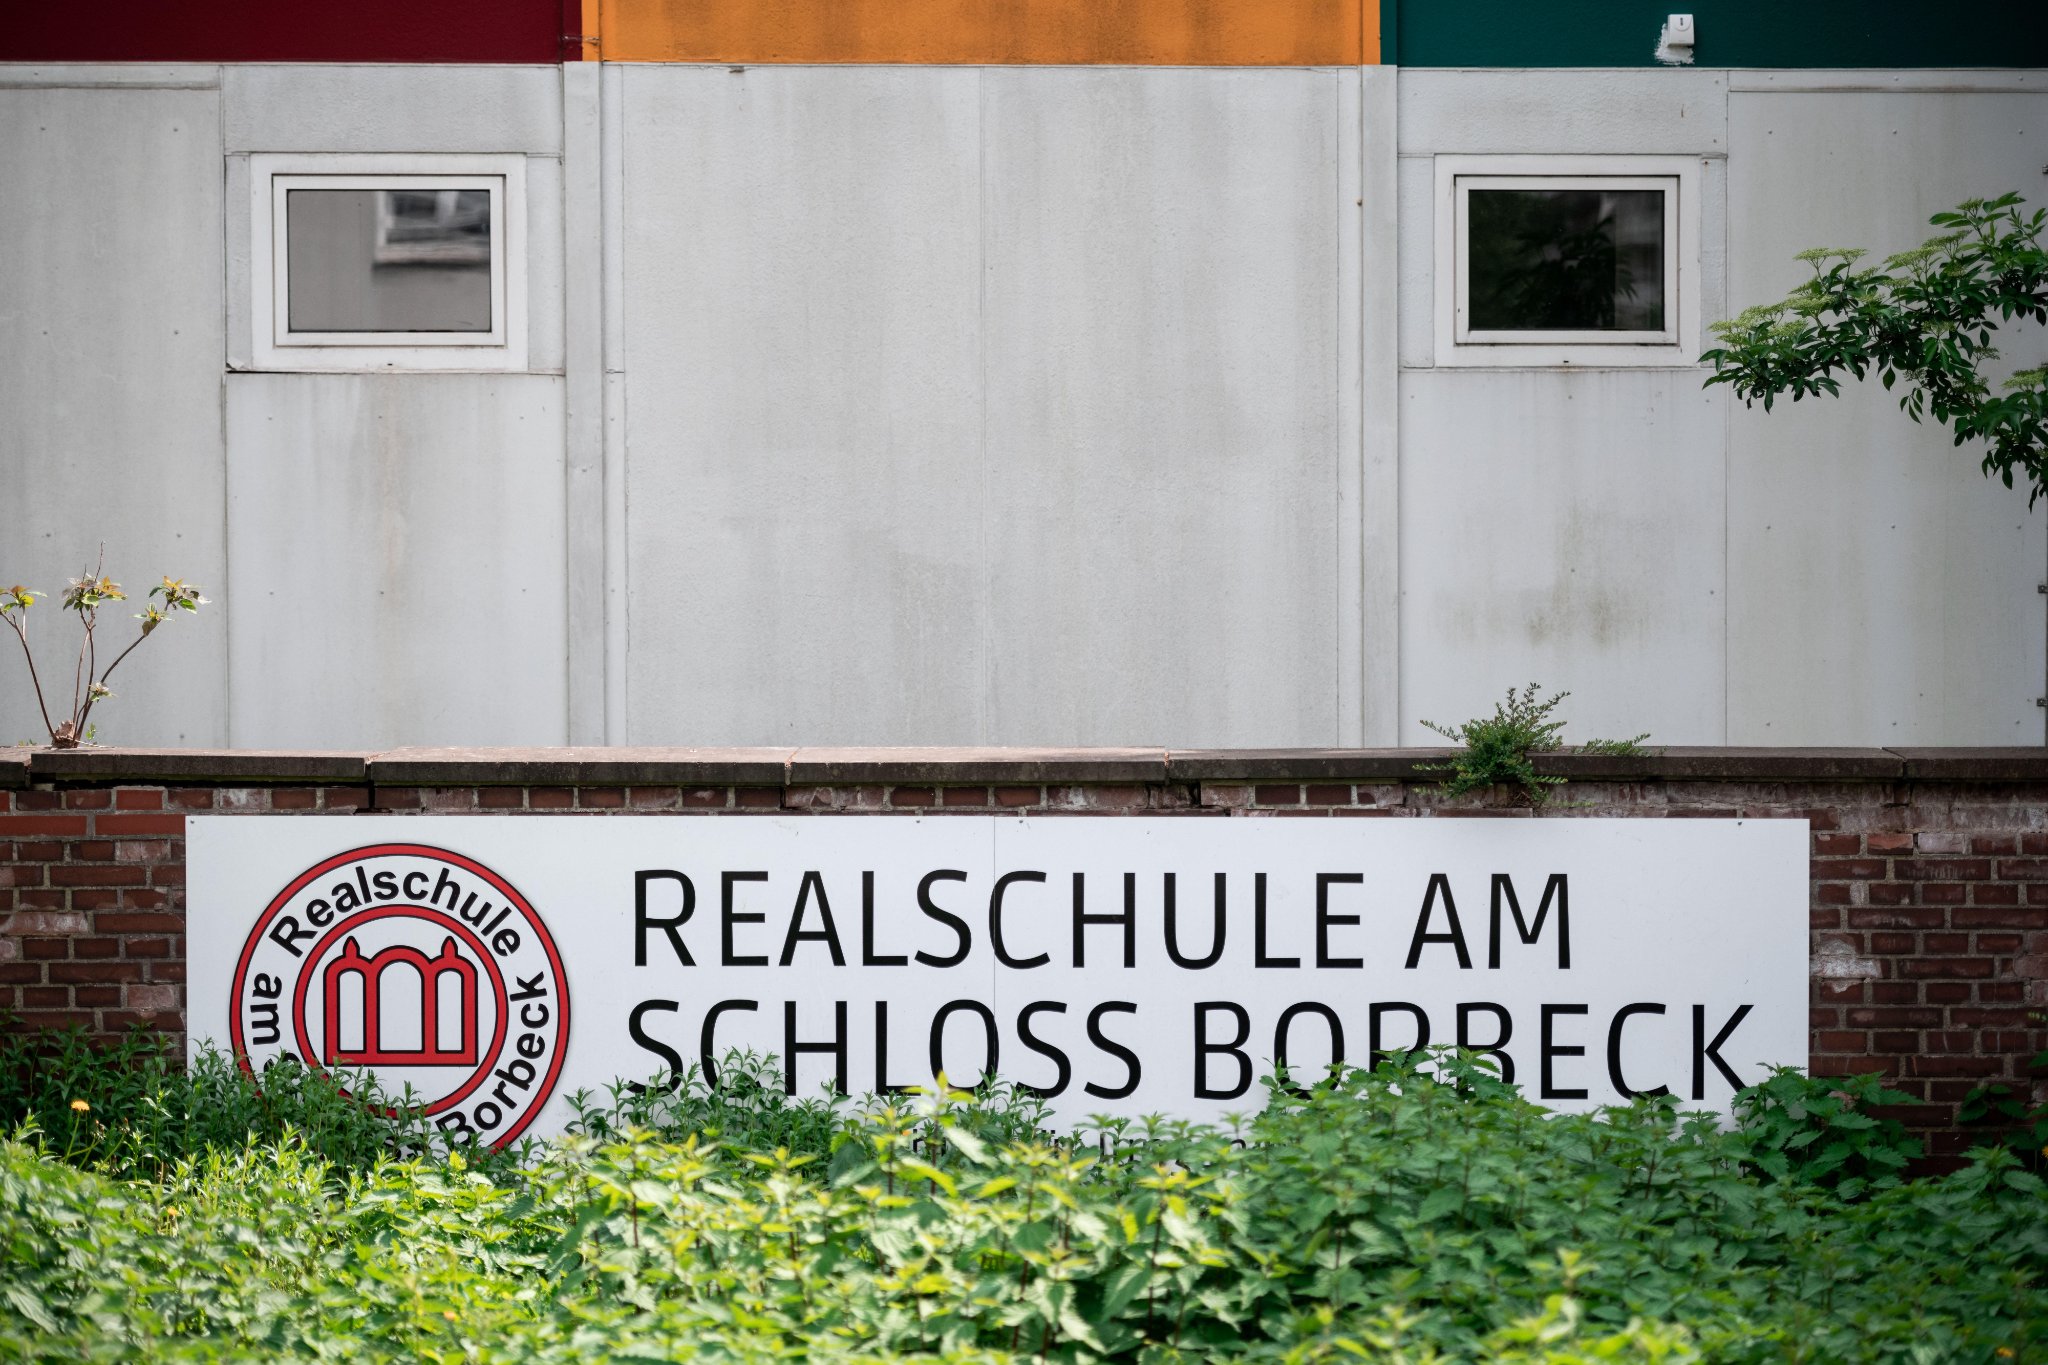 في حادثة نادرة، أفشلت الشرطة محاولة طالب لوضع متفجرات بمدرسة ثانوية بمنطقة "بوربيك"، في مدينة "إيسن" غرب ألمانيا. (foto : Fabian Strauch/dpa)